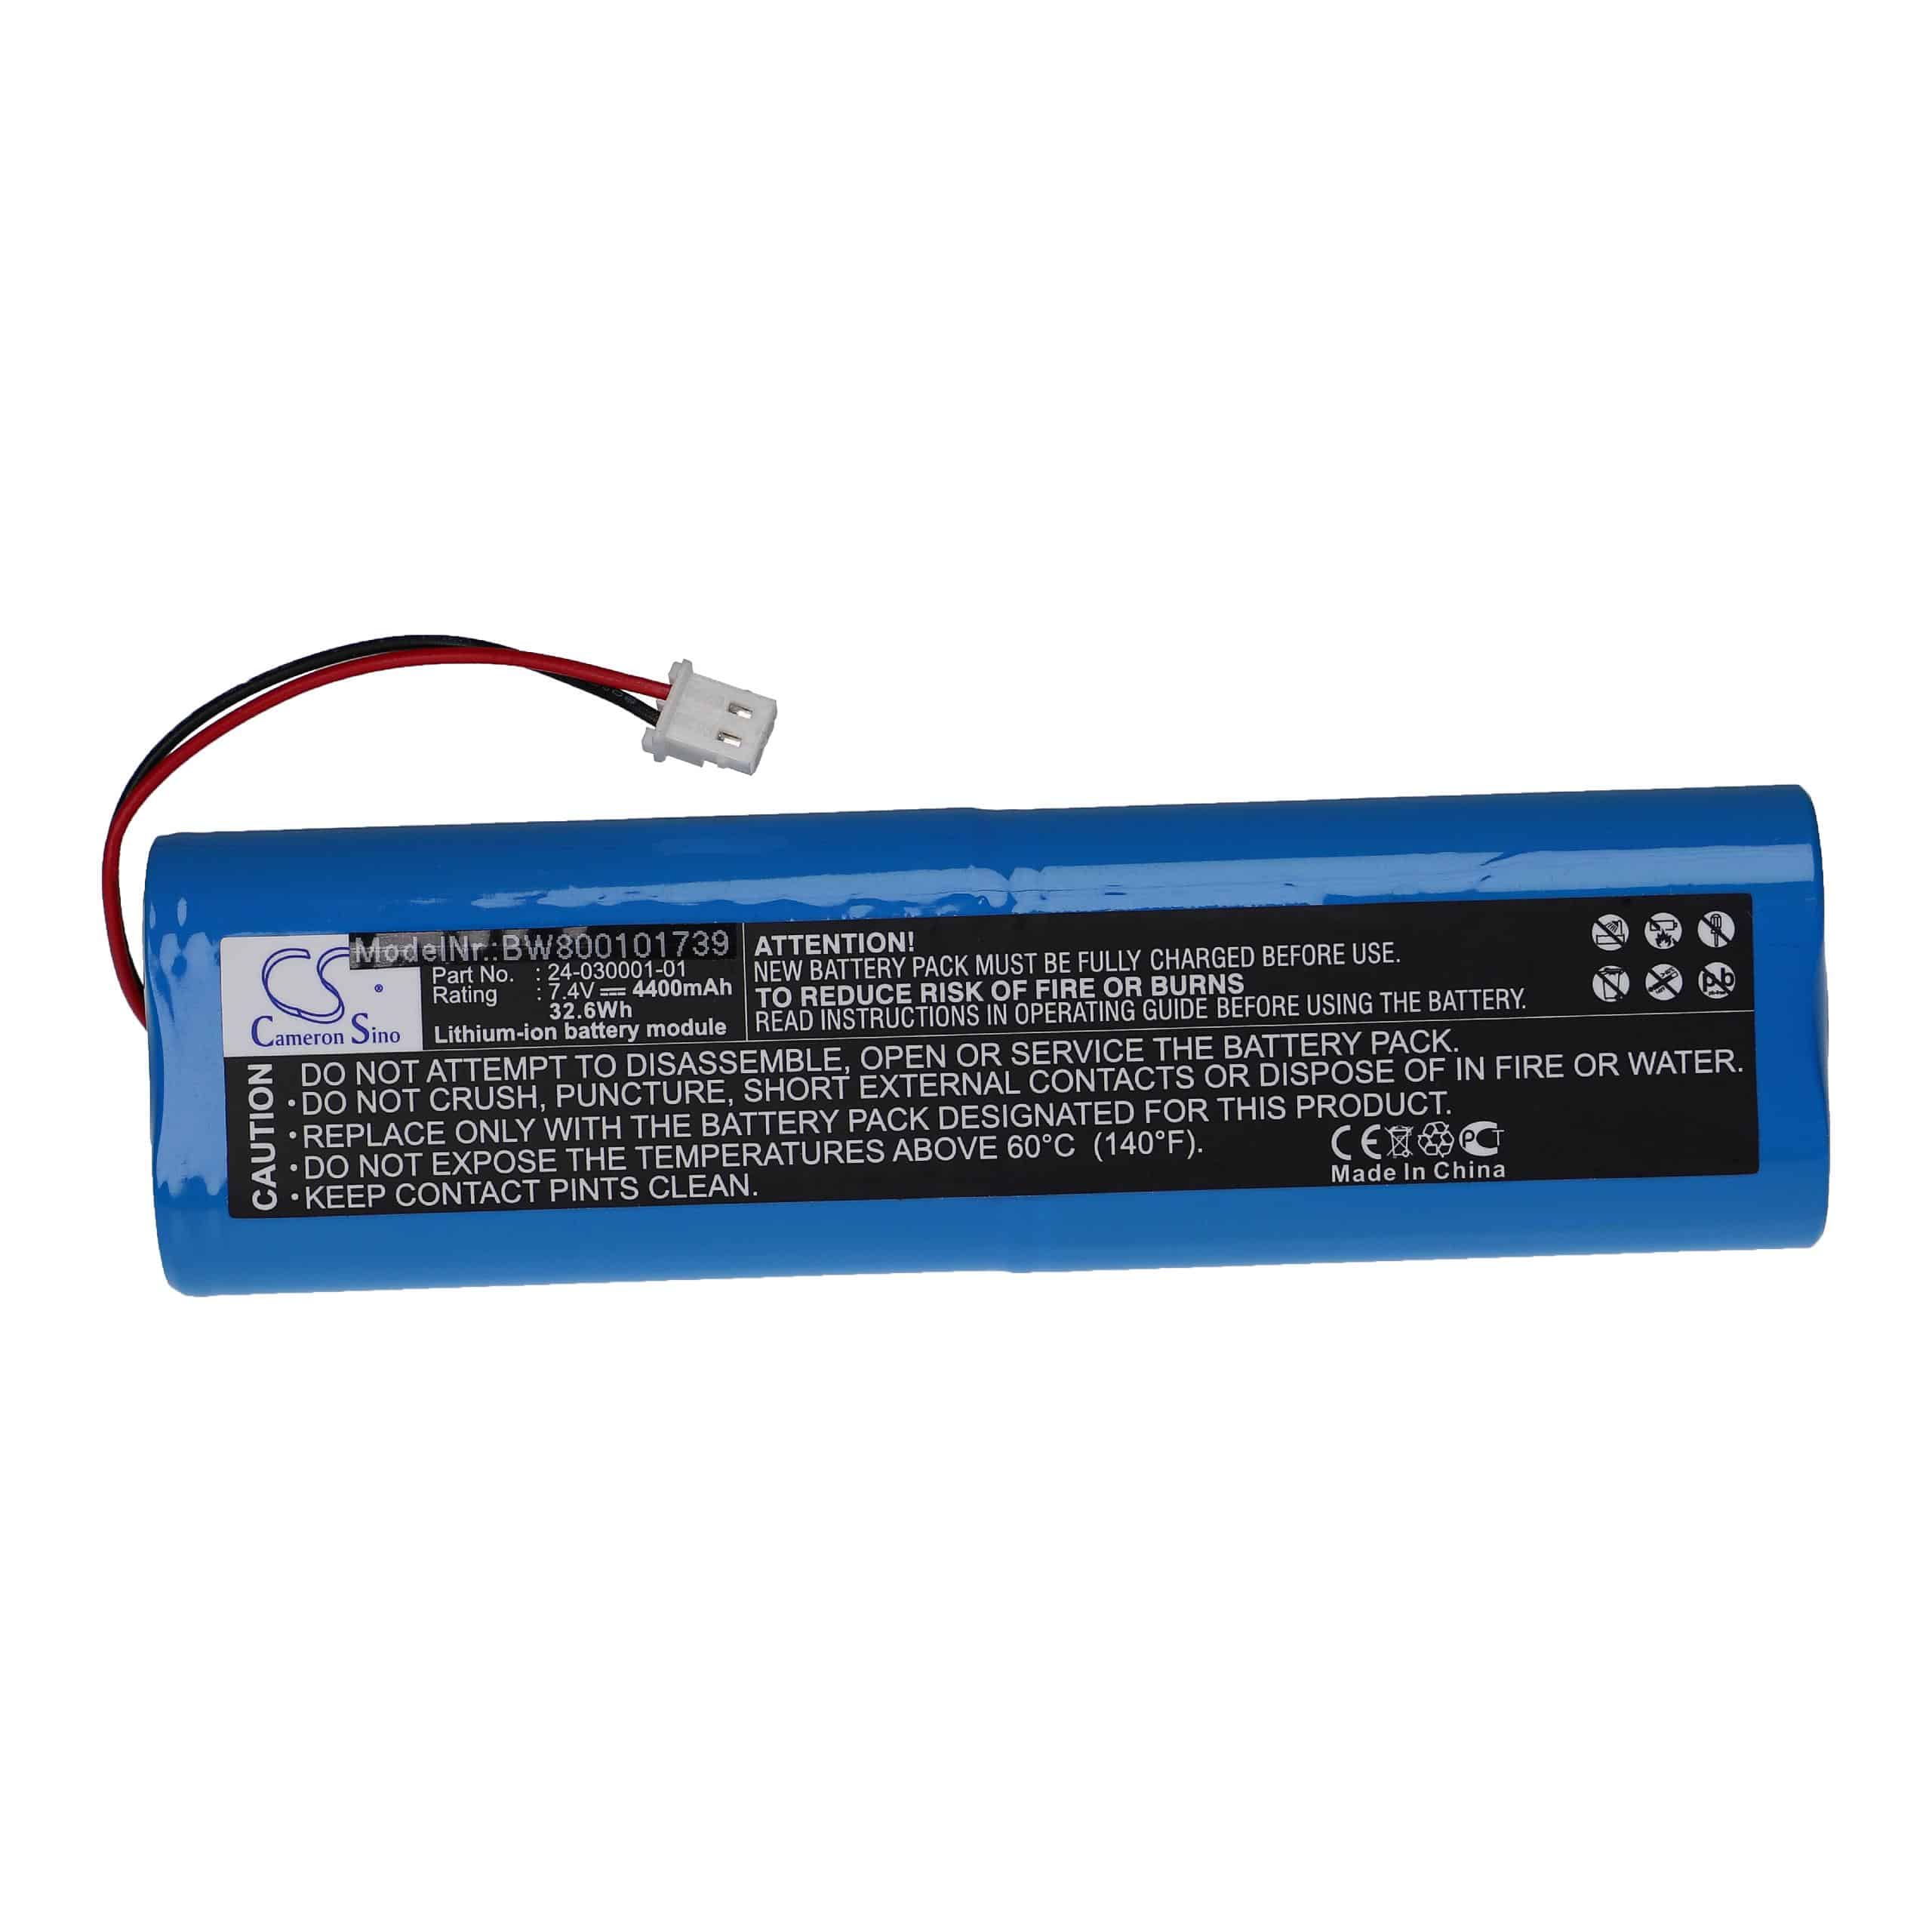 Batería reemplaza Topcon 24-030001-01 para dispositivo medición Topcon - 4400 mAh 7,4 V Li-Ion